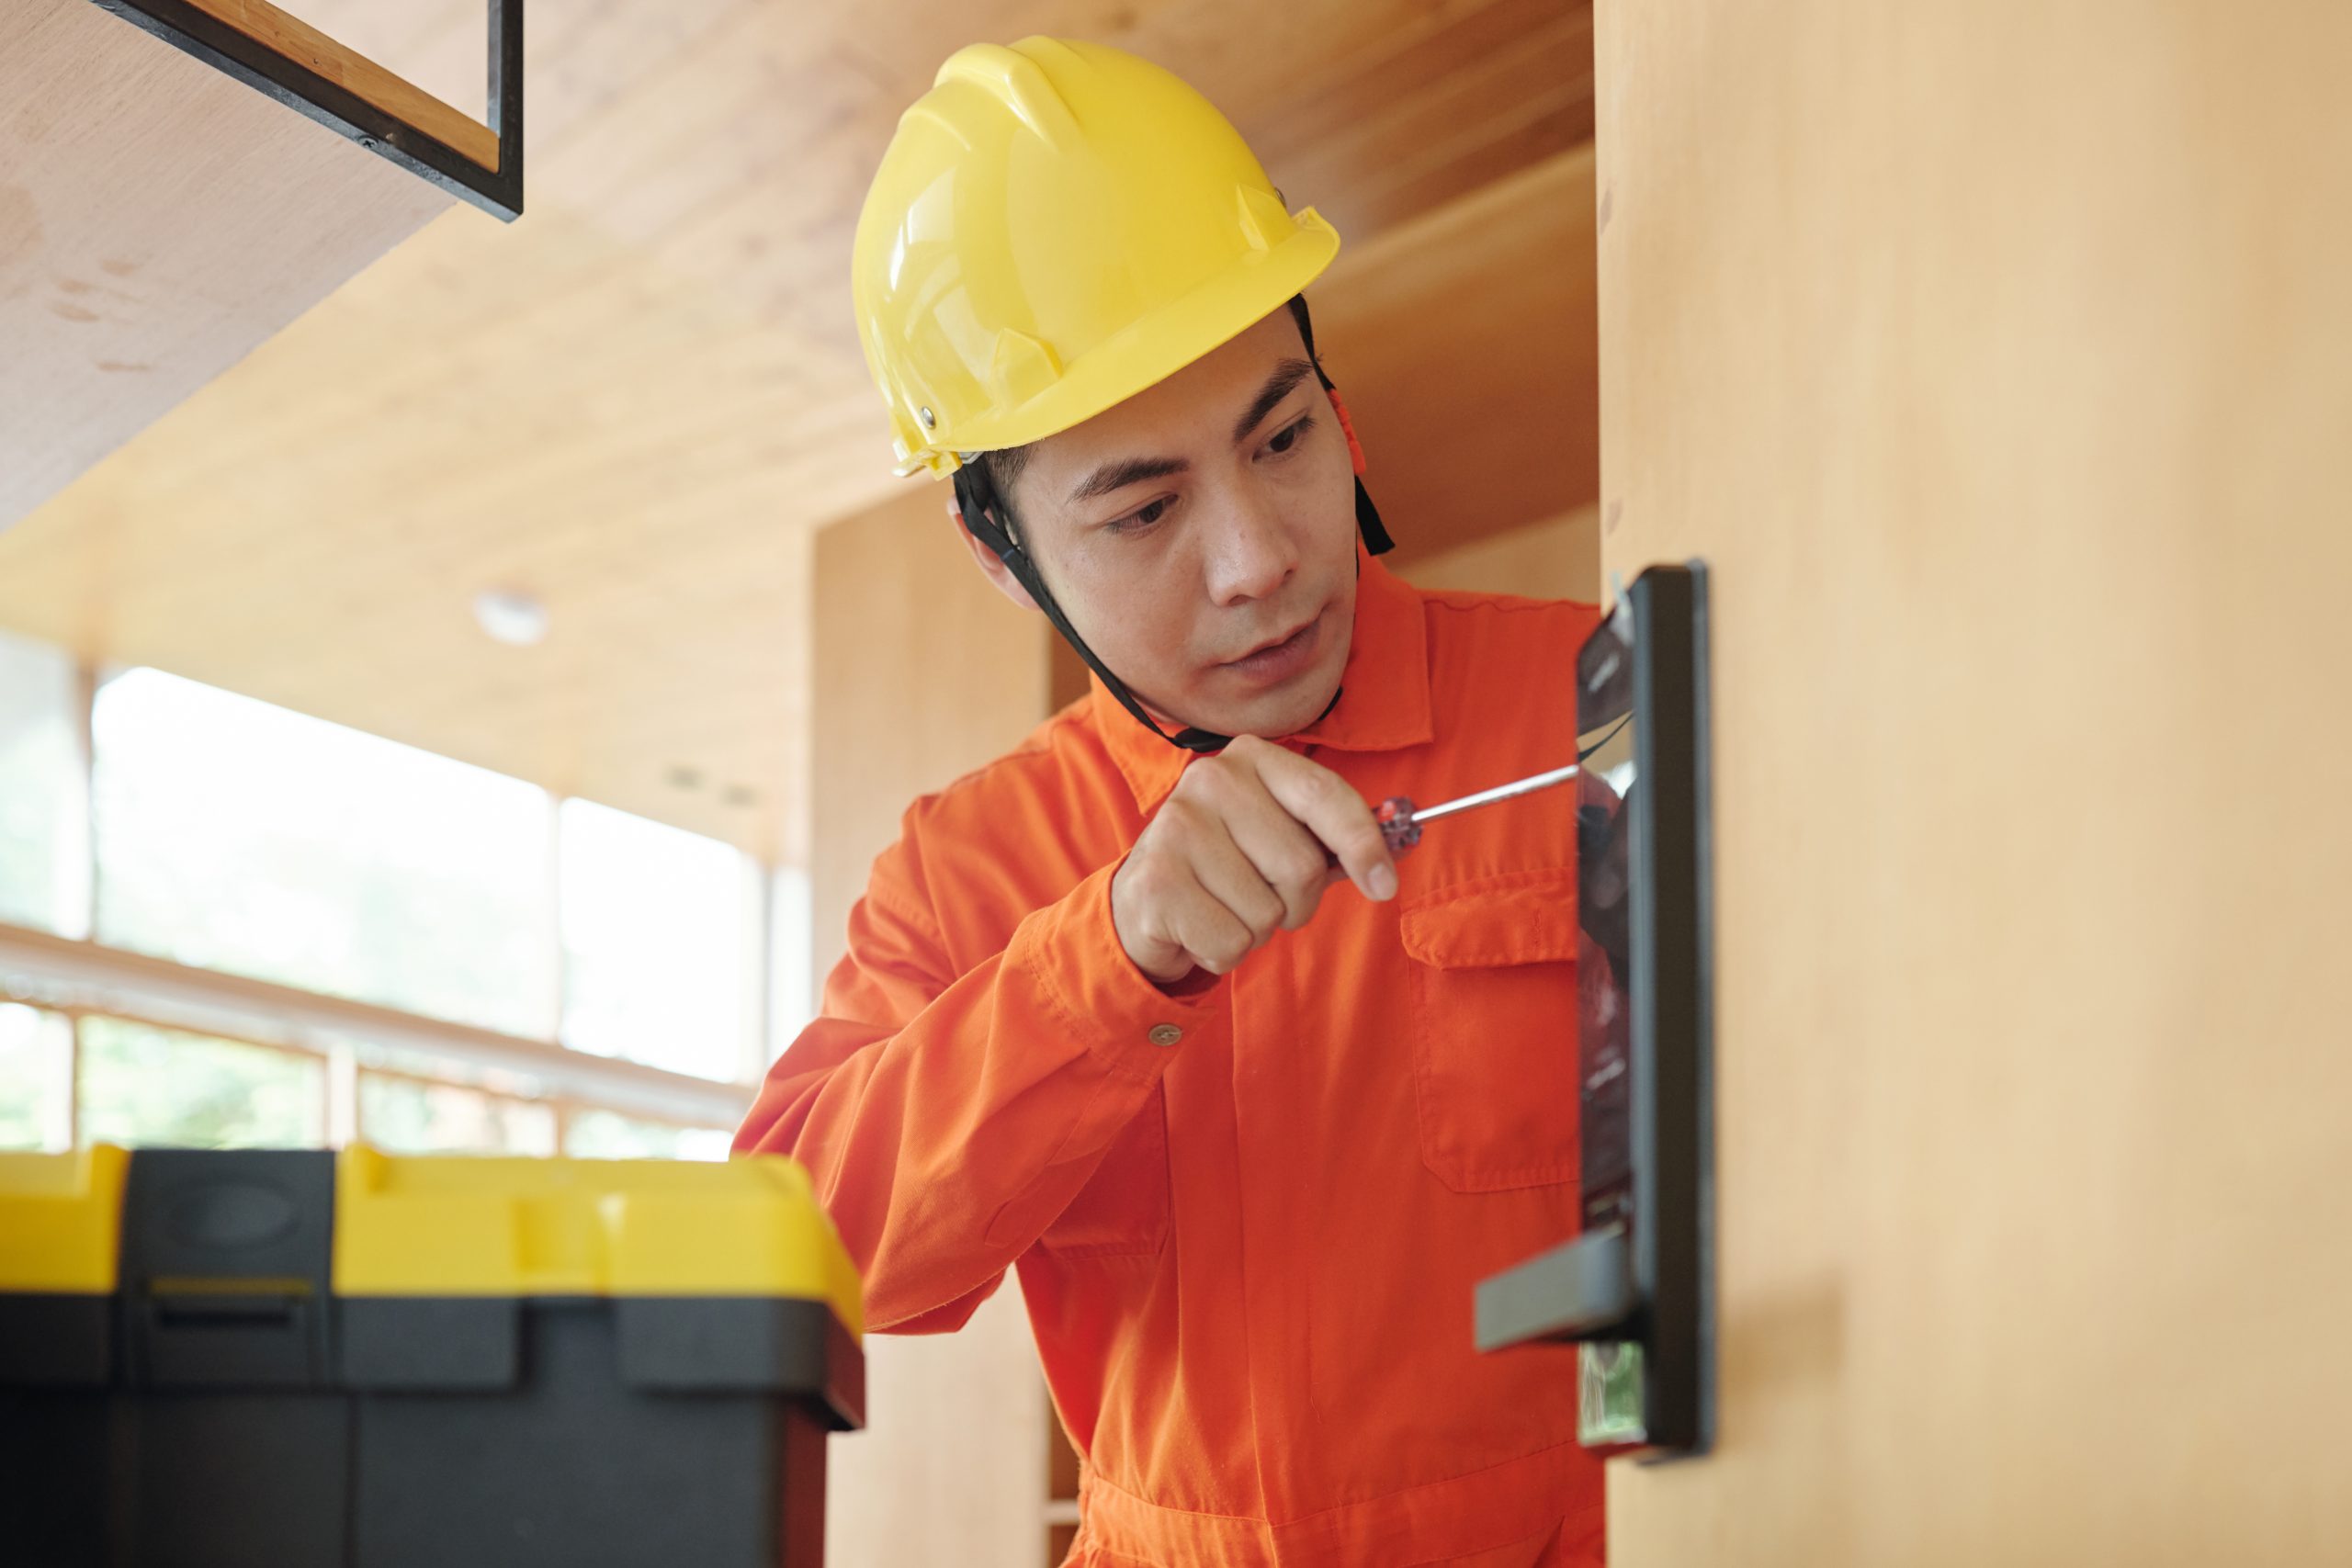 Smart doorbell installation-electrical work